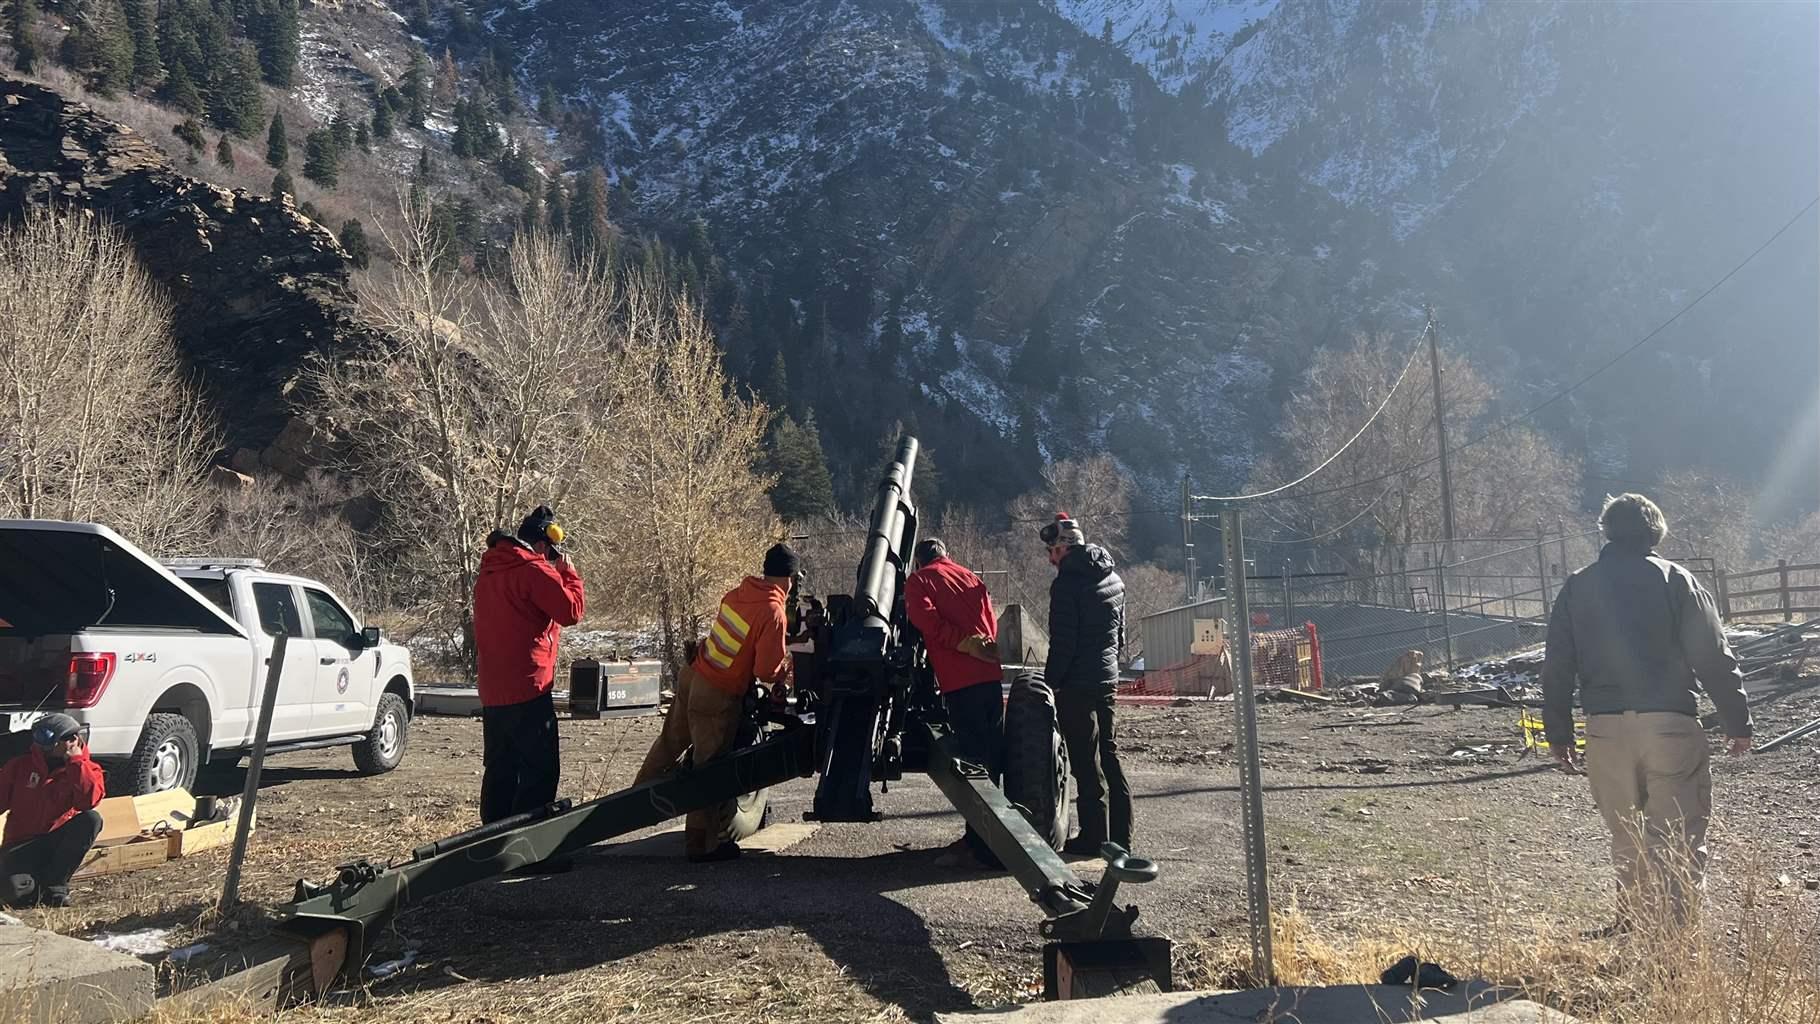 Utah DOT pointing howitzer to mountain